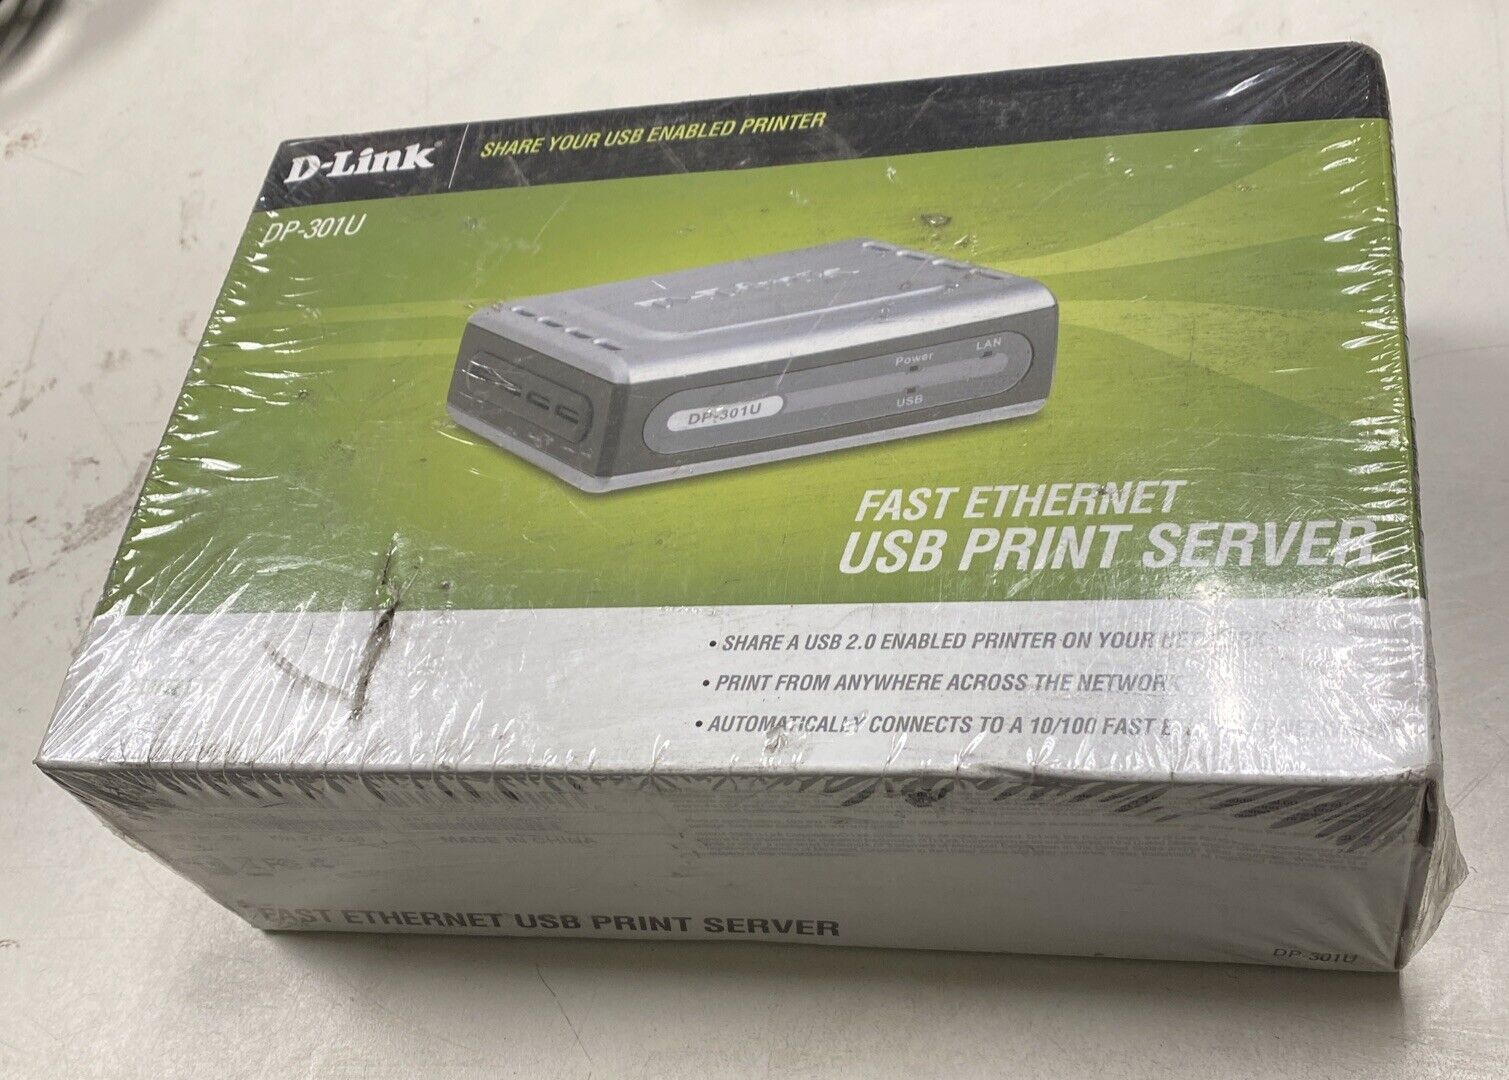 D-LINK Fast Ethernet USB Print Server DP-301U Brand New Sealed